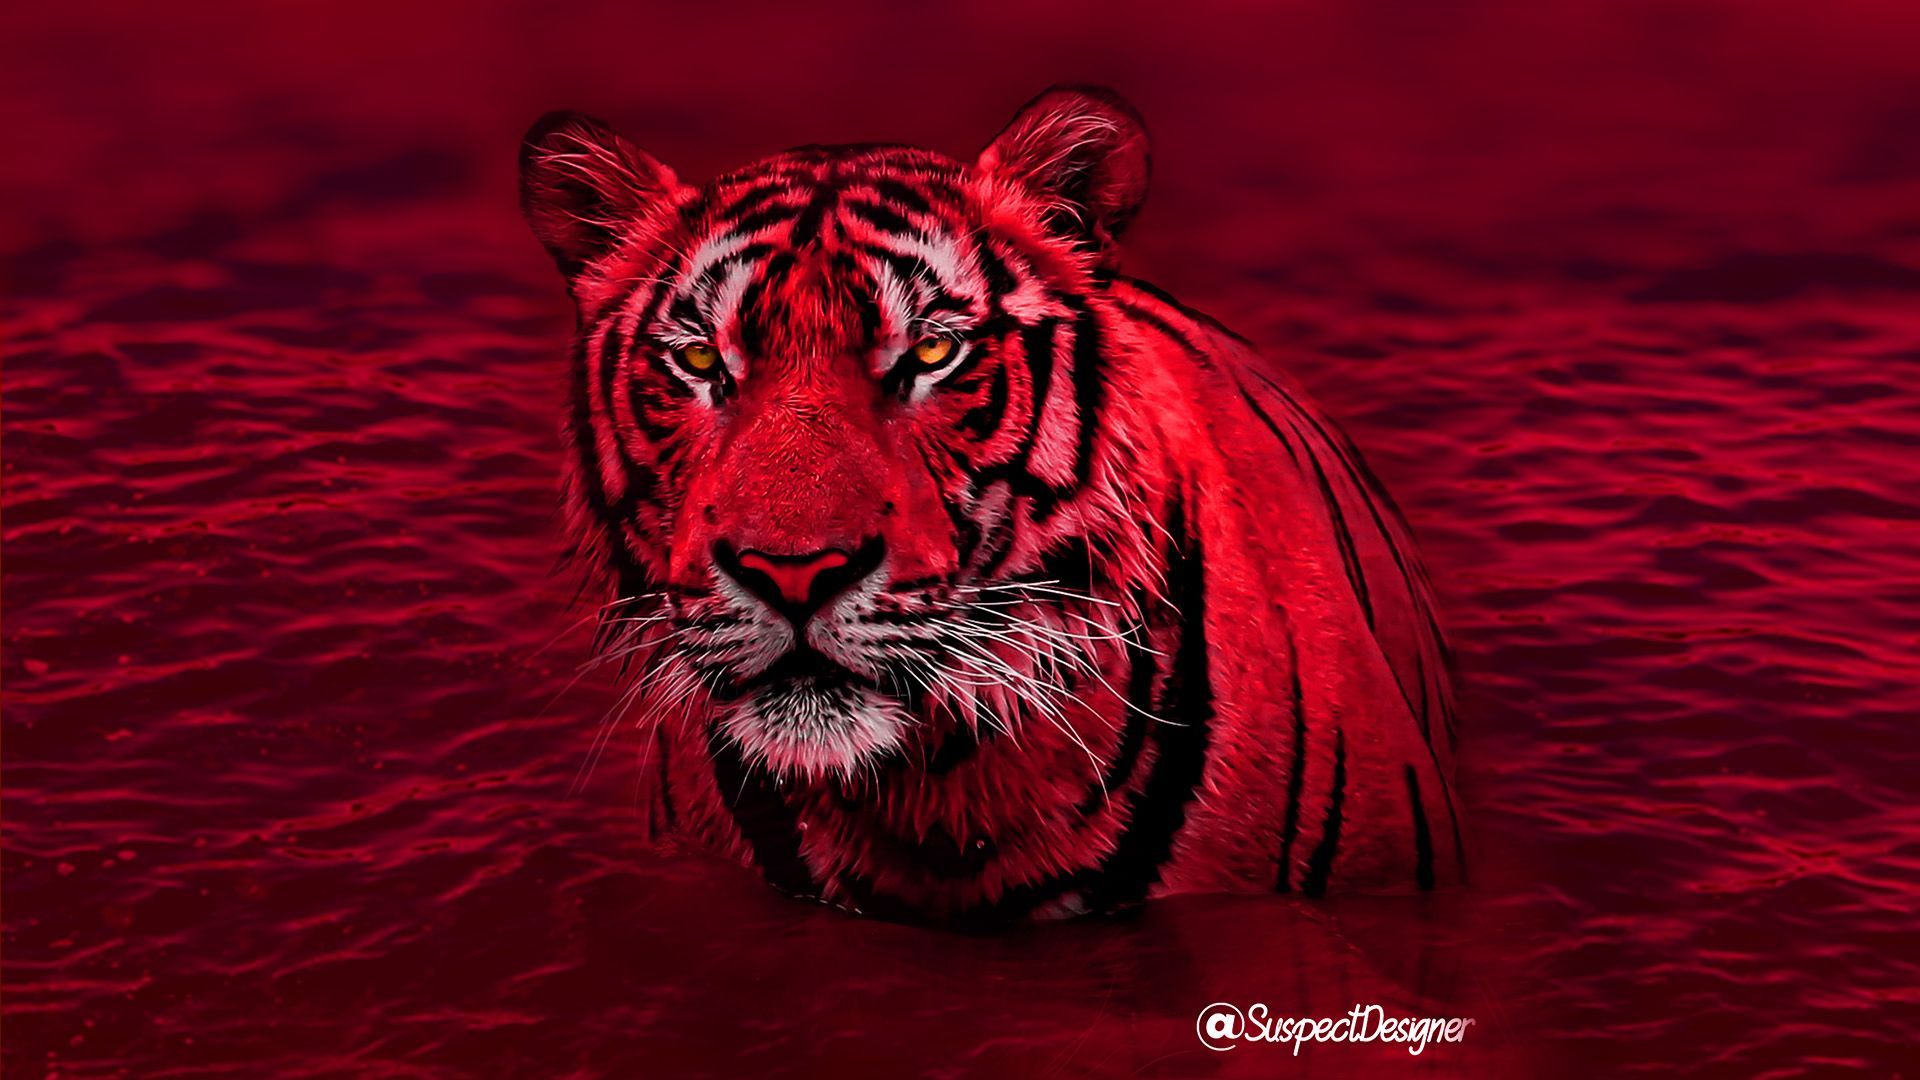 Tiger. Tiger wallpaper, Tiger, Animals